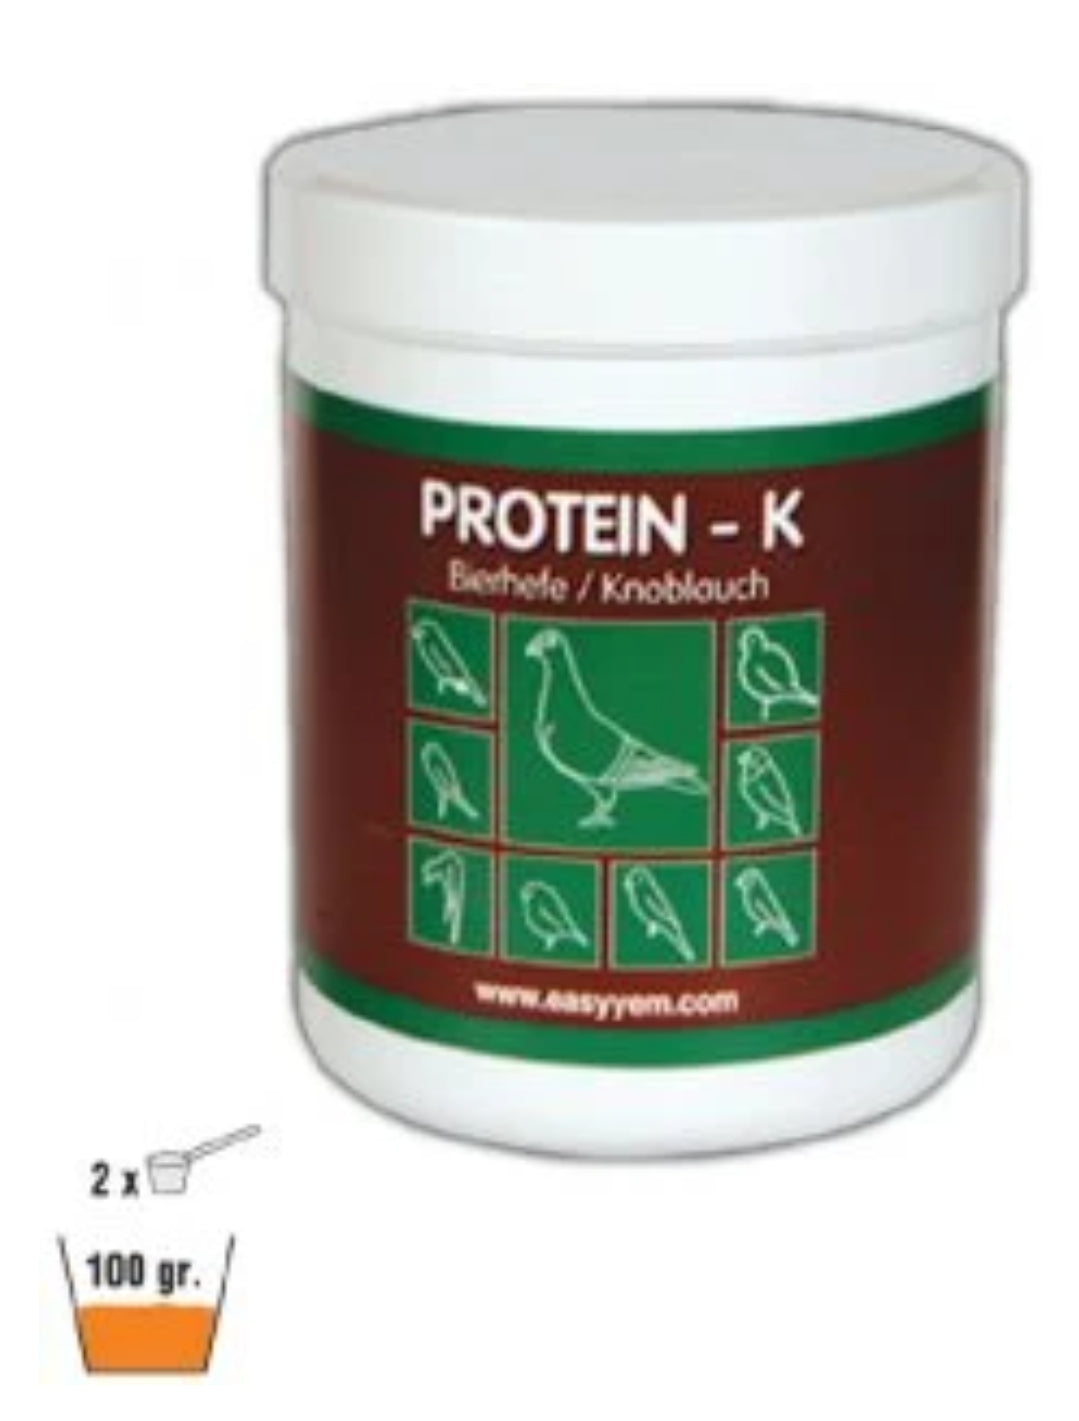 Protein - K, Biergist En Knoflook 250 gram - Easyyem